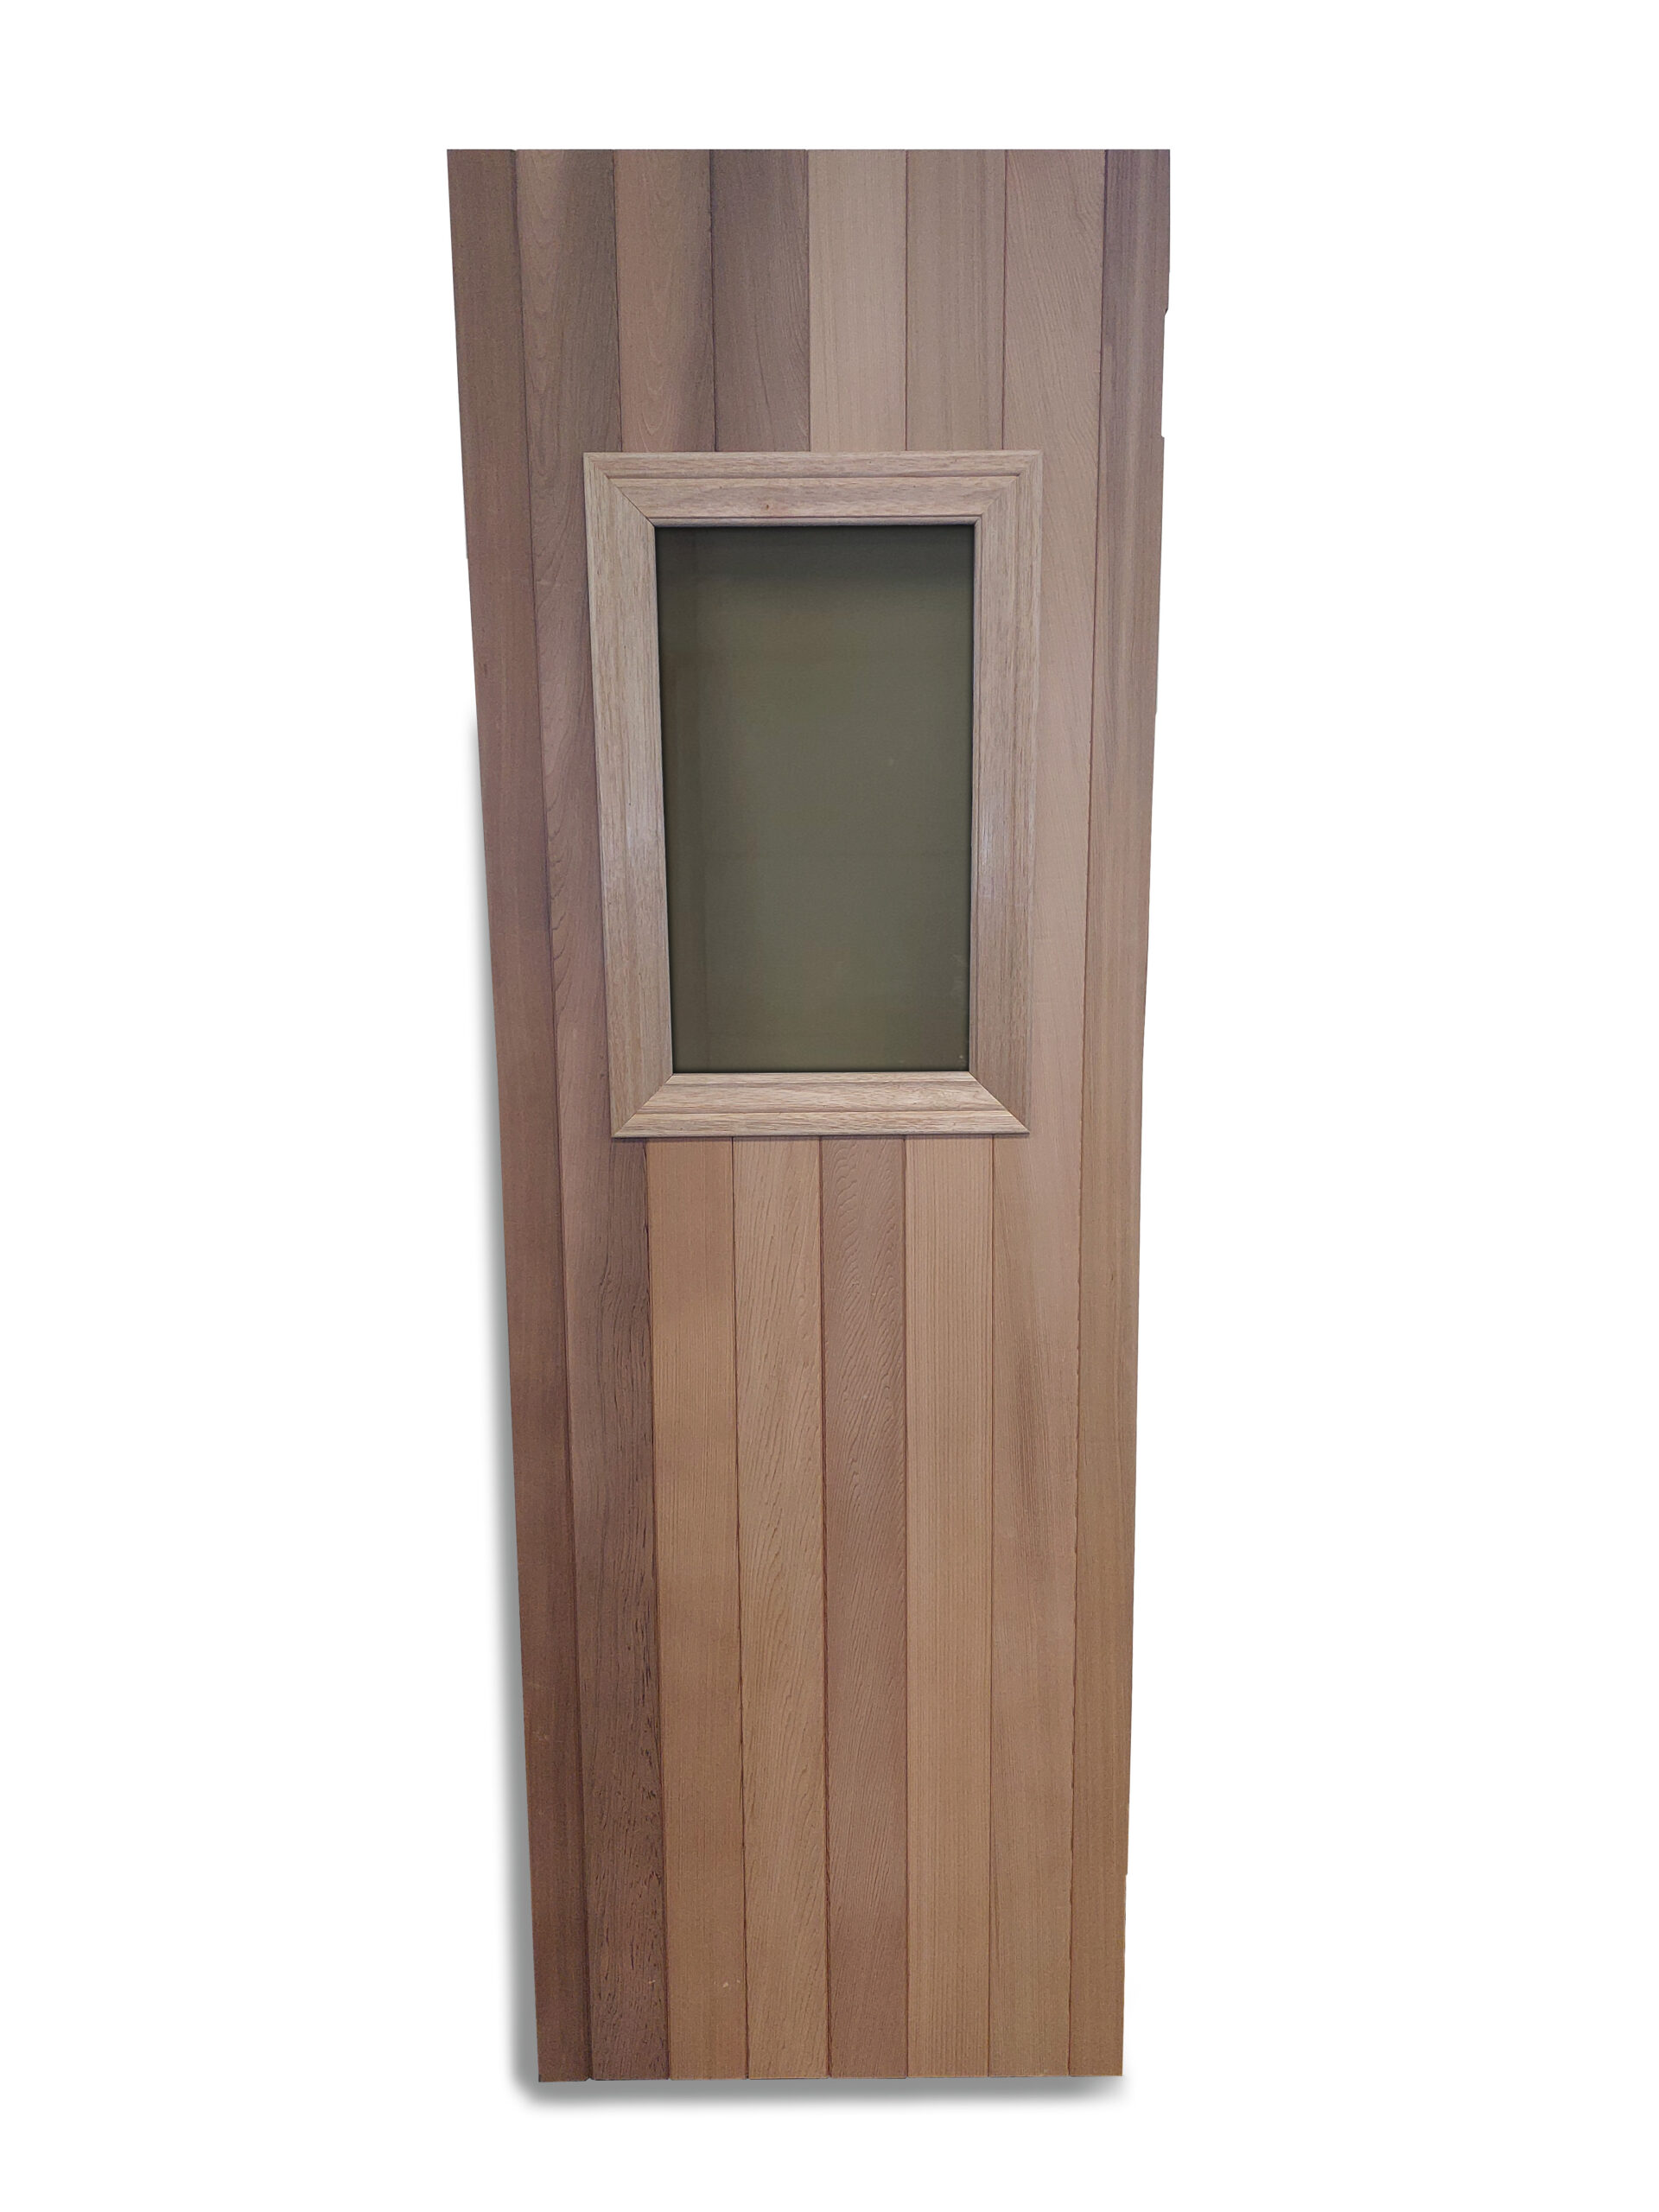 Insulated Sauna Door – Thermopane Glass